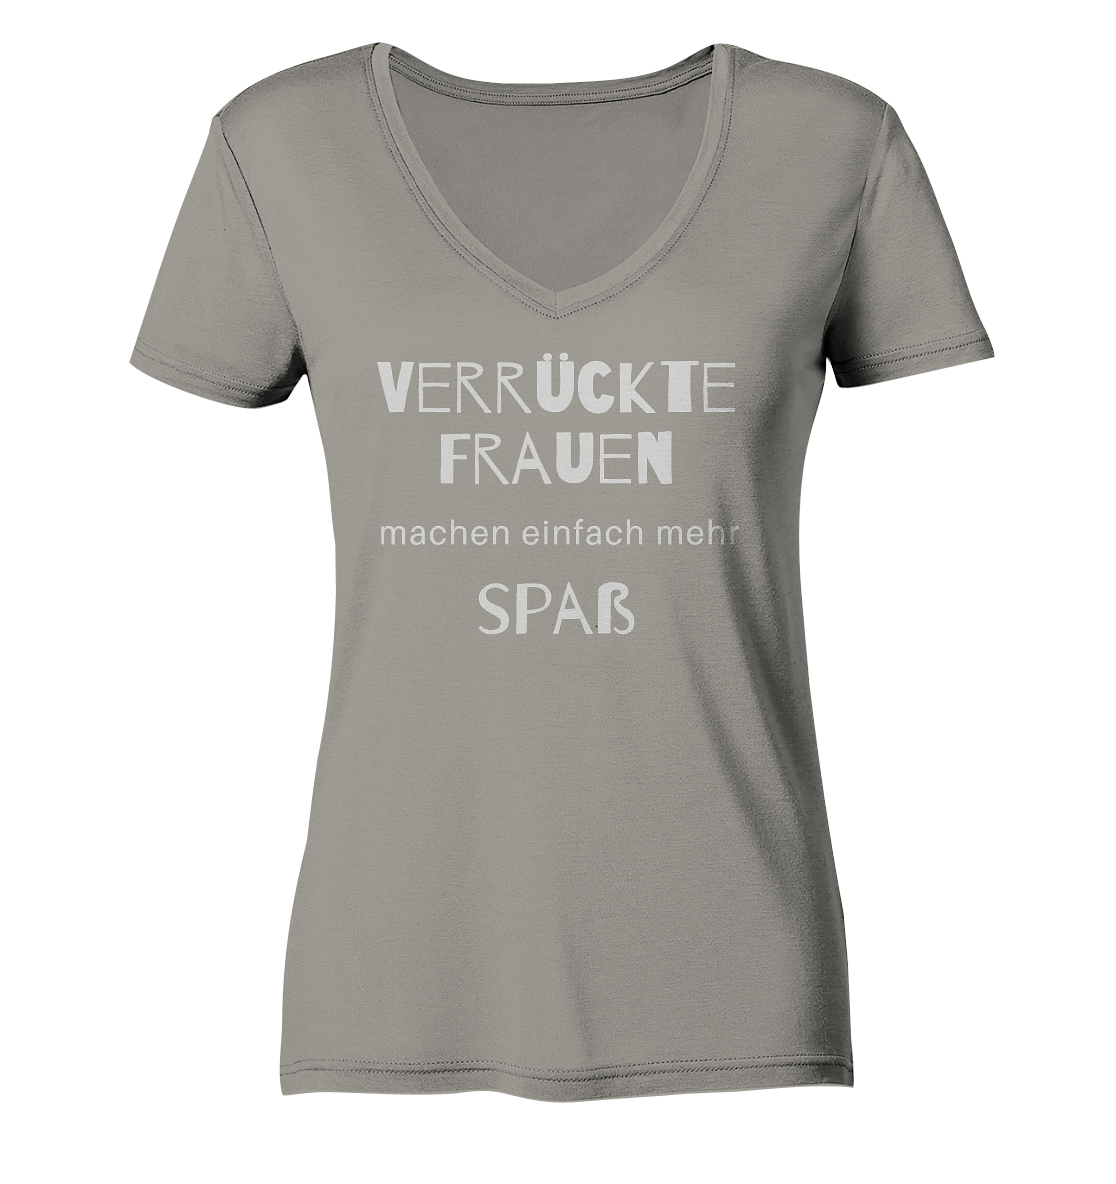 Damen-T-Shirt V-Ausschnitt mit Aufdruck "Verrückte Frauen machen einfach mehr Spaß", hell grau